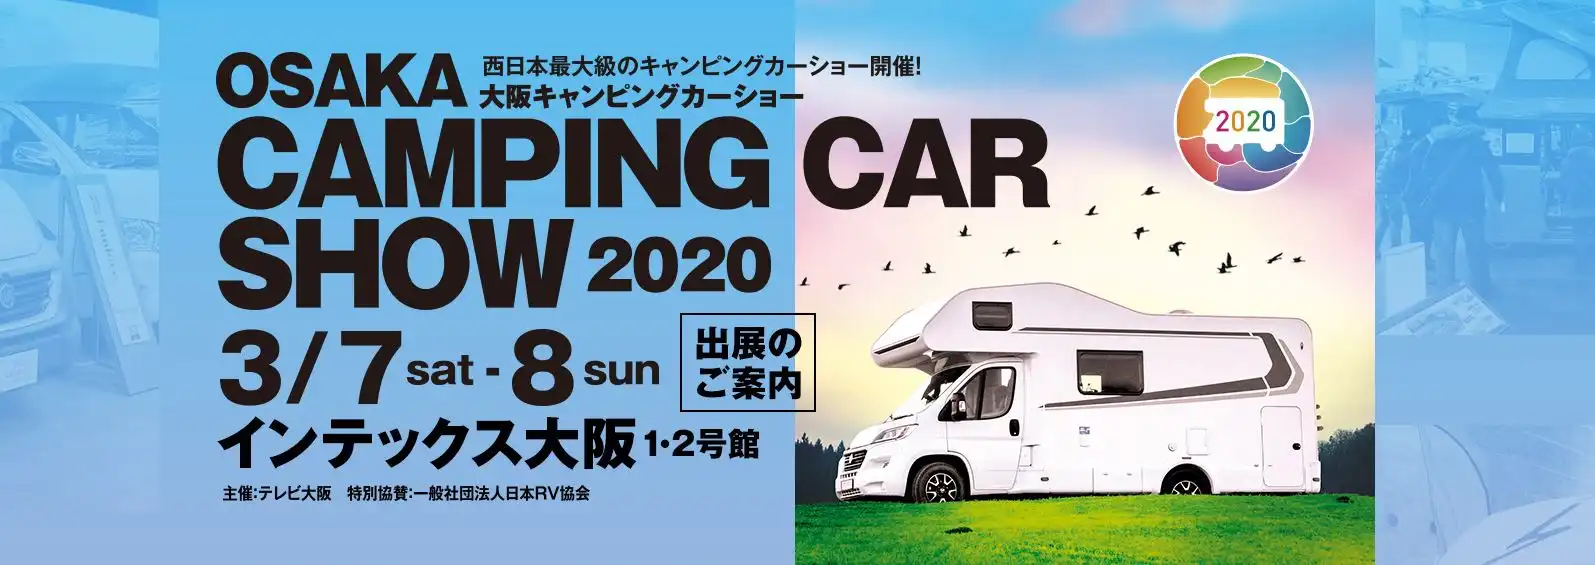 大阪キャンピングカーショー2020